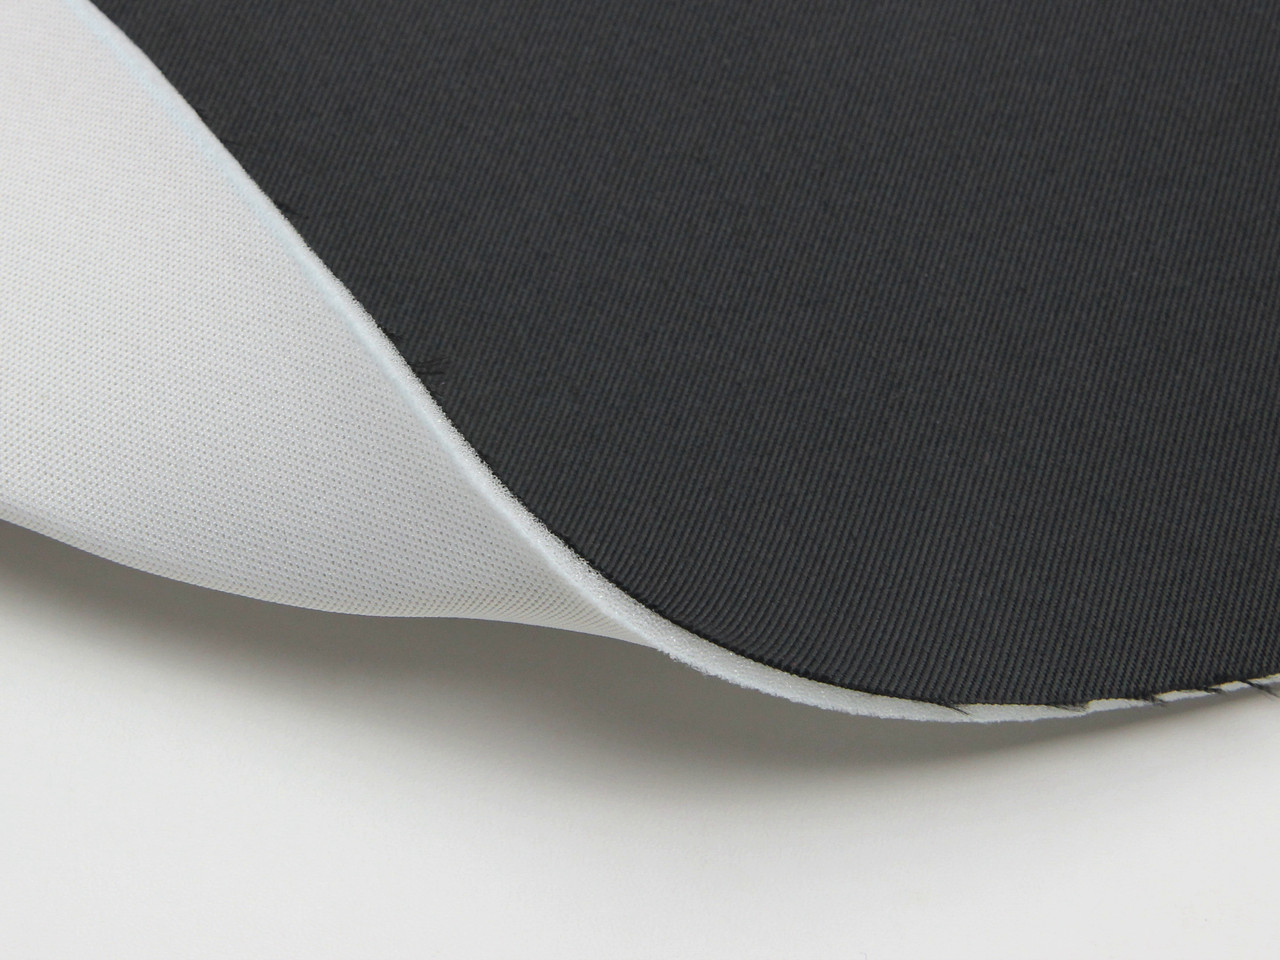 Автоткань для боковой части сидений TSB-1/23/11 (темно-серый графит) основа поролон 3мм с сеткой, ширина 180см детальная фотка